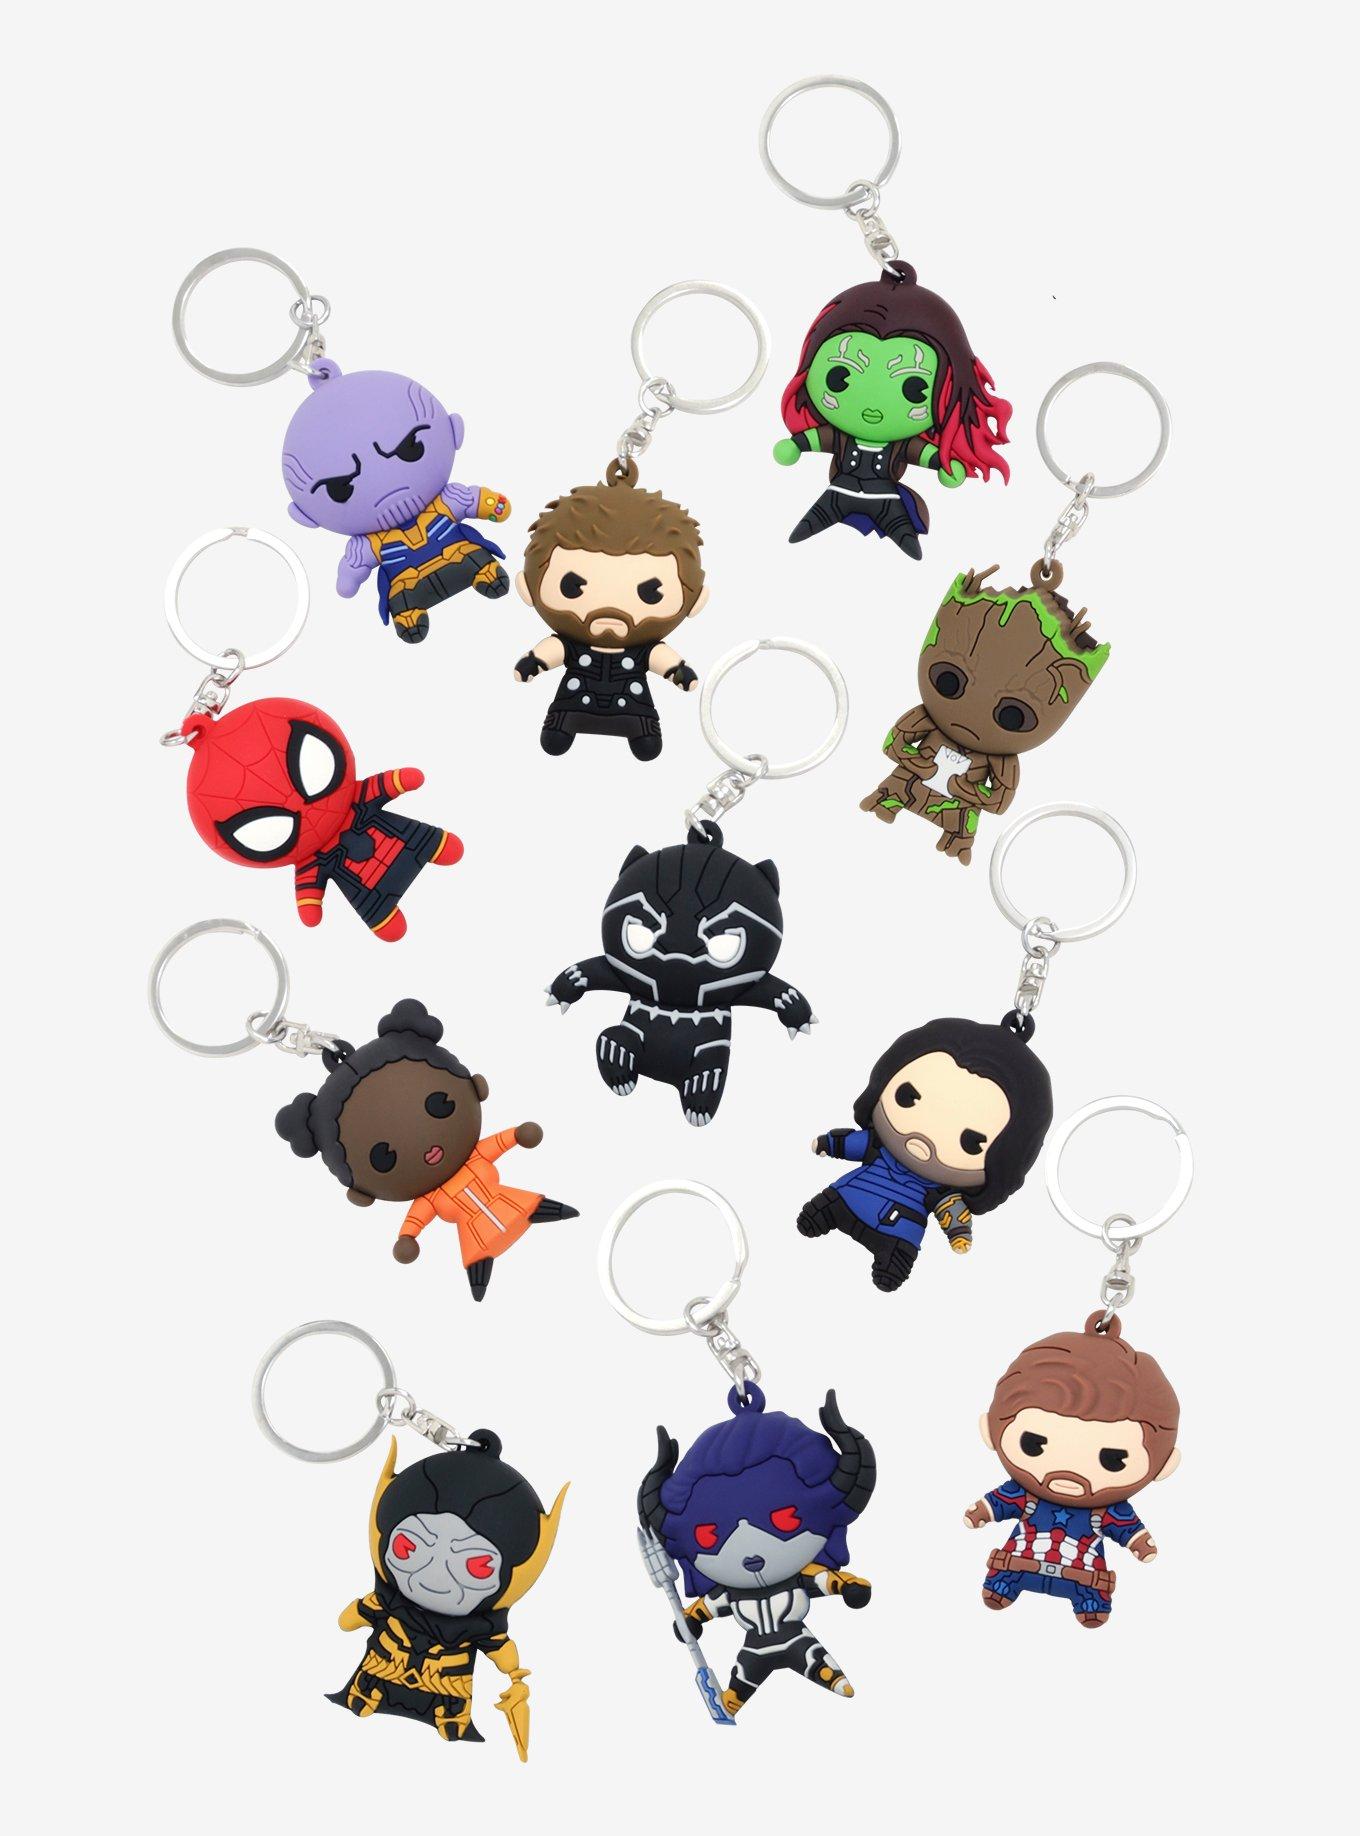 Marvel Avengers: Infinity War Series 2 Blind Bag Figural Key Chain, , alternate